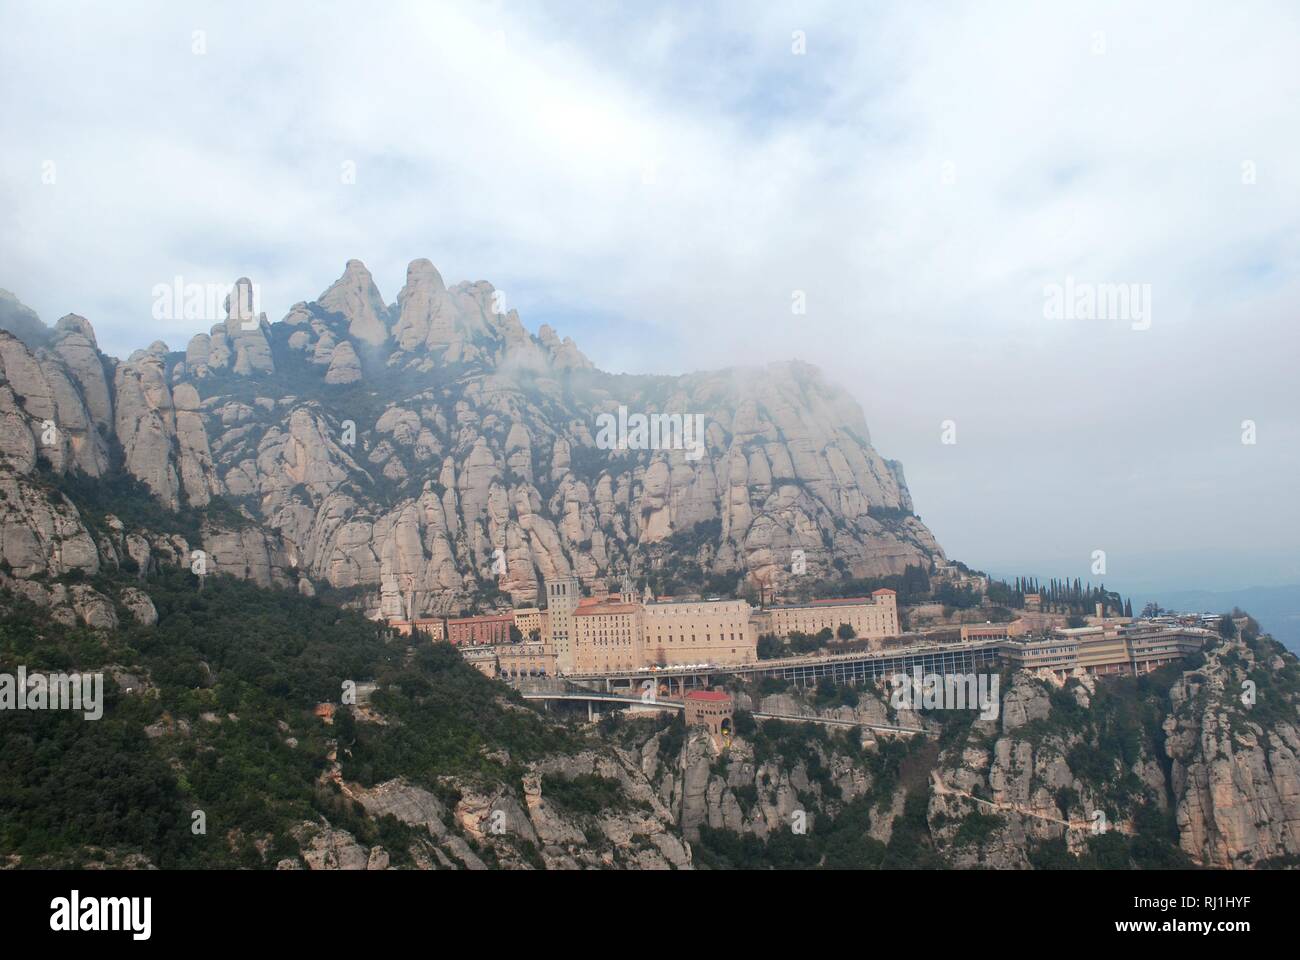 Santa Maria de Montserrat l'abbaye et monastère sur le côté de la "montagne" errated en Catalogne, Espagne Banque D'Images